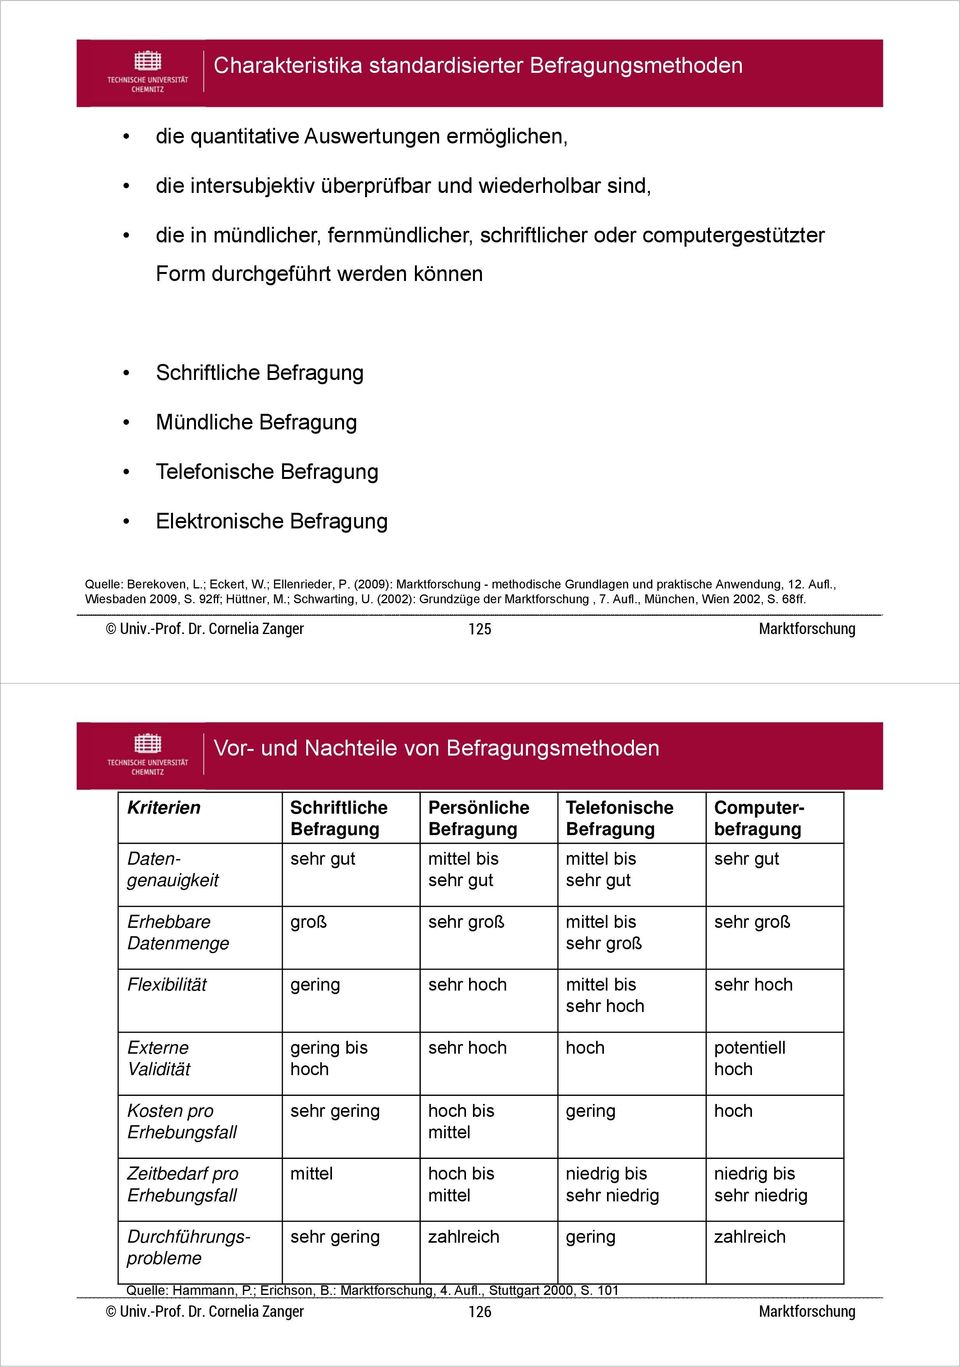 (2009): - methodische Grundlagen und praktische Anwendung, 12. Aufl., Wiesbaden 2009, S. 92ff; Hüttner, M.; Schwarting, U. (2002): Grundzüge der, 7. Aufl., München, Wien 2002, S. 68ff.